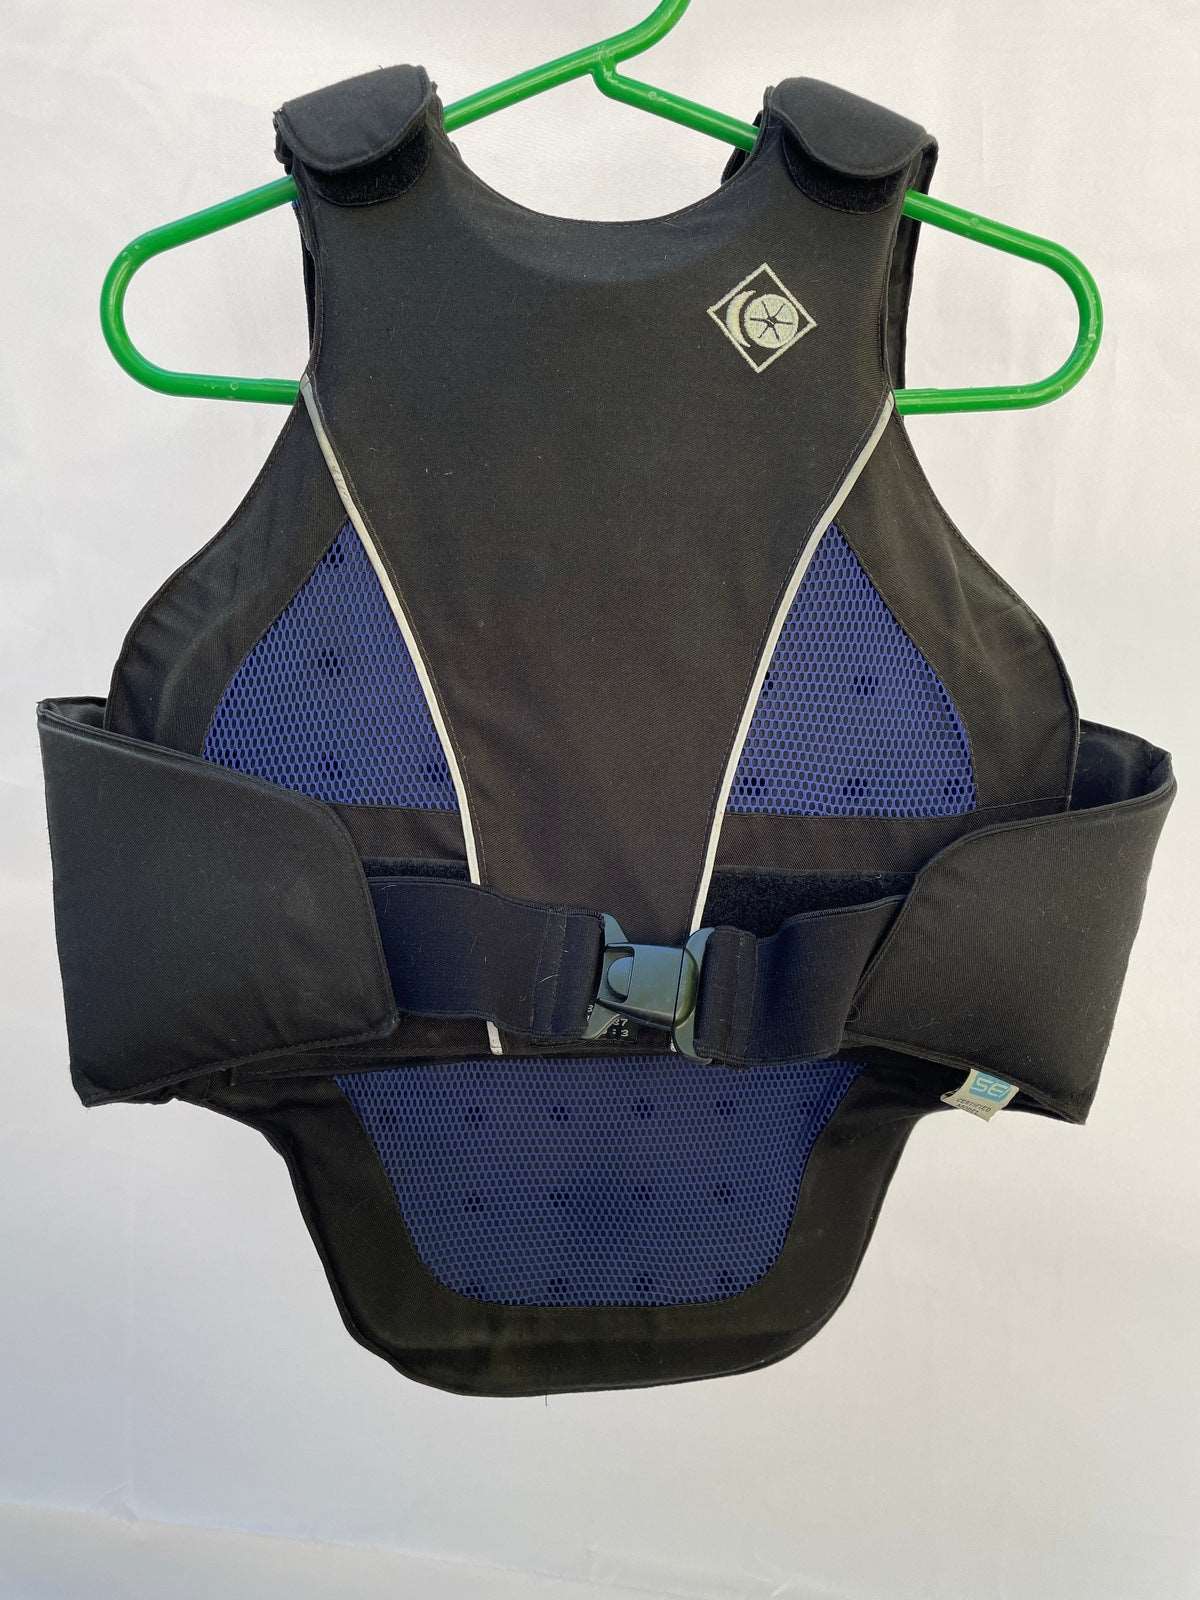 ThriftedEquestrian Clothing Accessories Child XL Charles Owen Safety Vest - Child XL